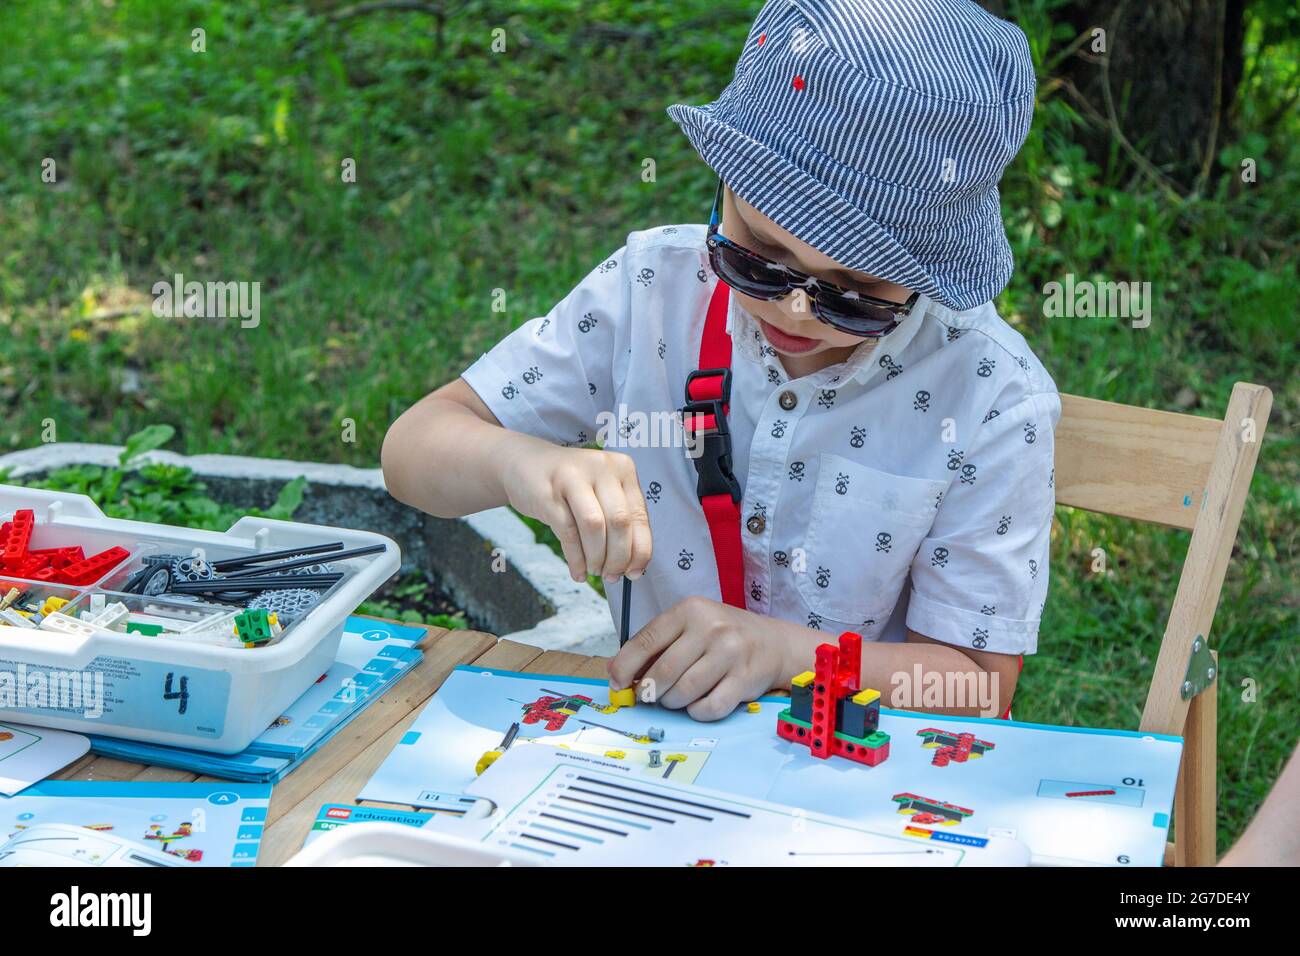 Zaporizhia, Ucraina - 19 giugno 2021: Festa della famiglia di beneficenza: Ragazzo che gioca con il kit di disegno della costruzione del giocattolo a arte e mestiere all'aperto workshop. Foto Stock